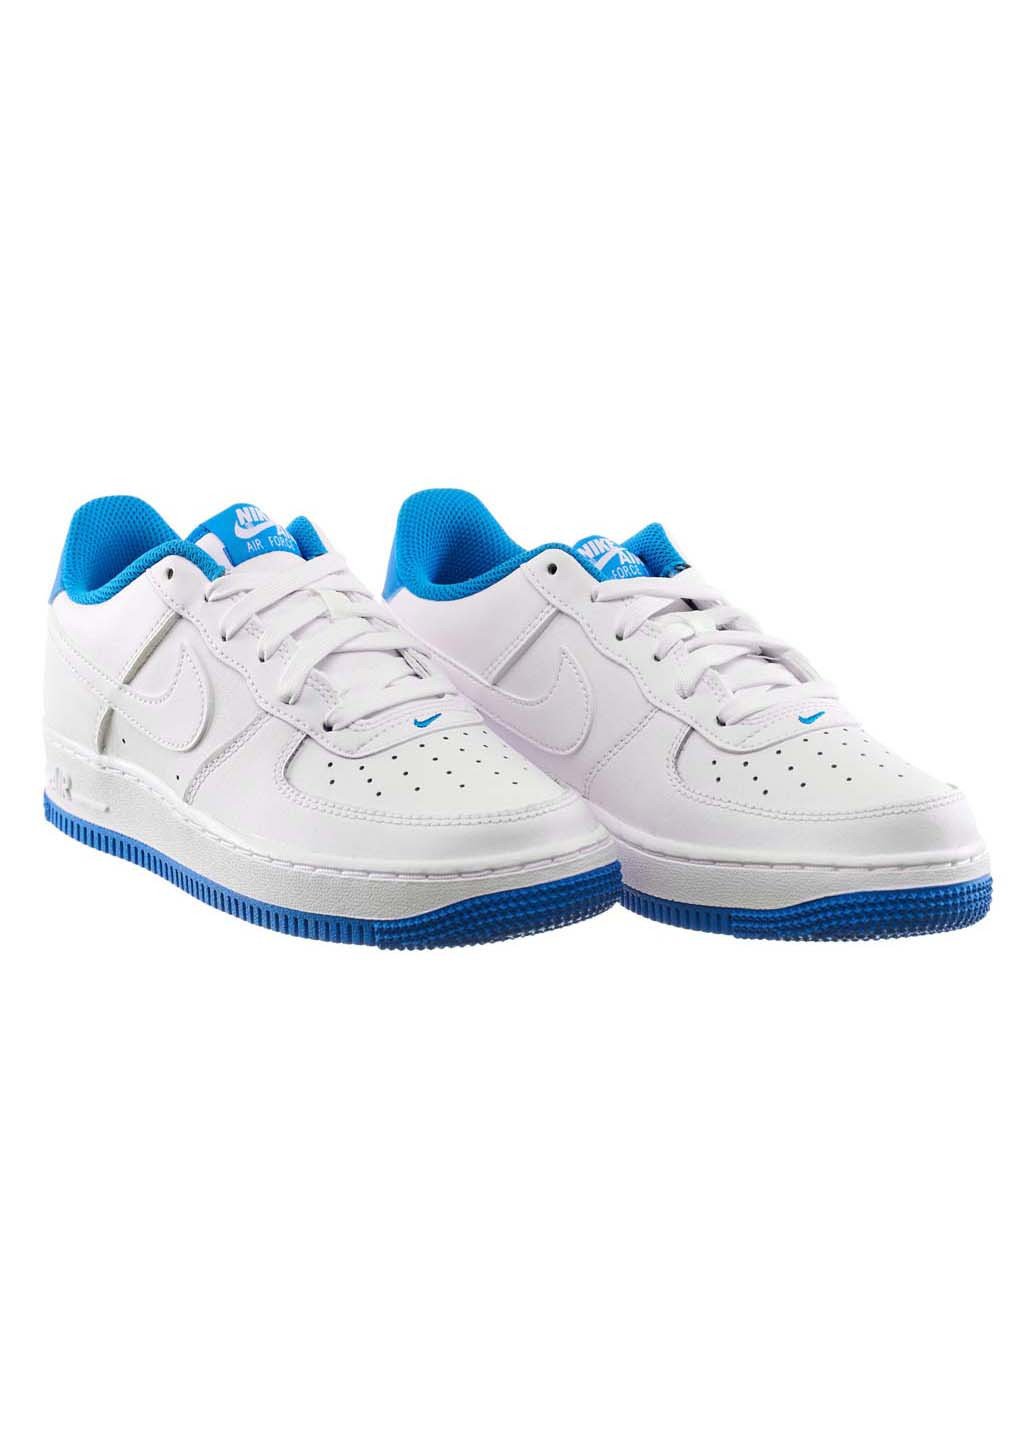 Білі осінні кросівки жіночі force 1 gs Nike